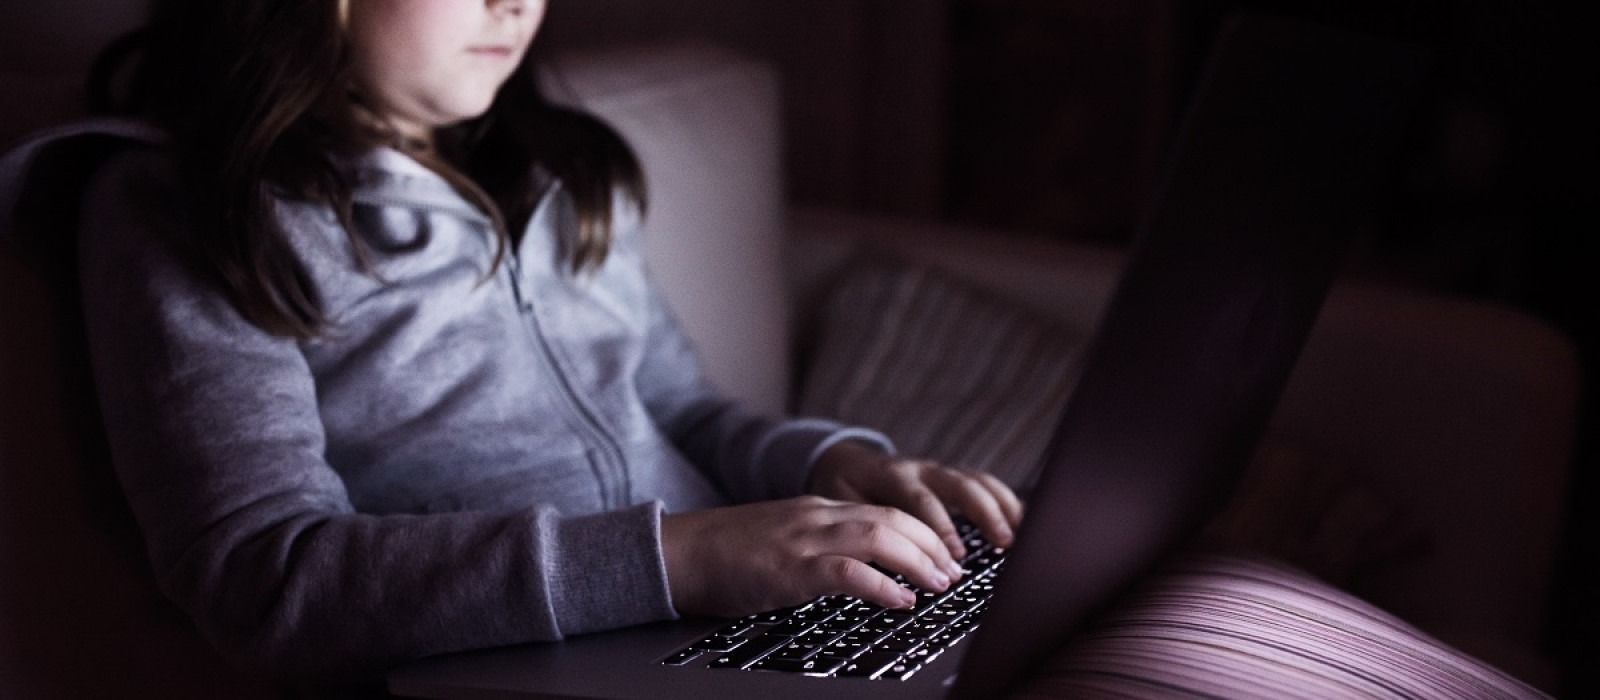 Μειώνεται το bullying στο σχολείο- Ενισχύεται ο ηλεκτρονικός εκφοβισμός